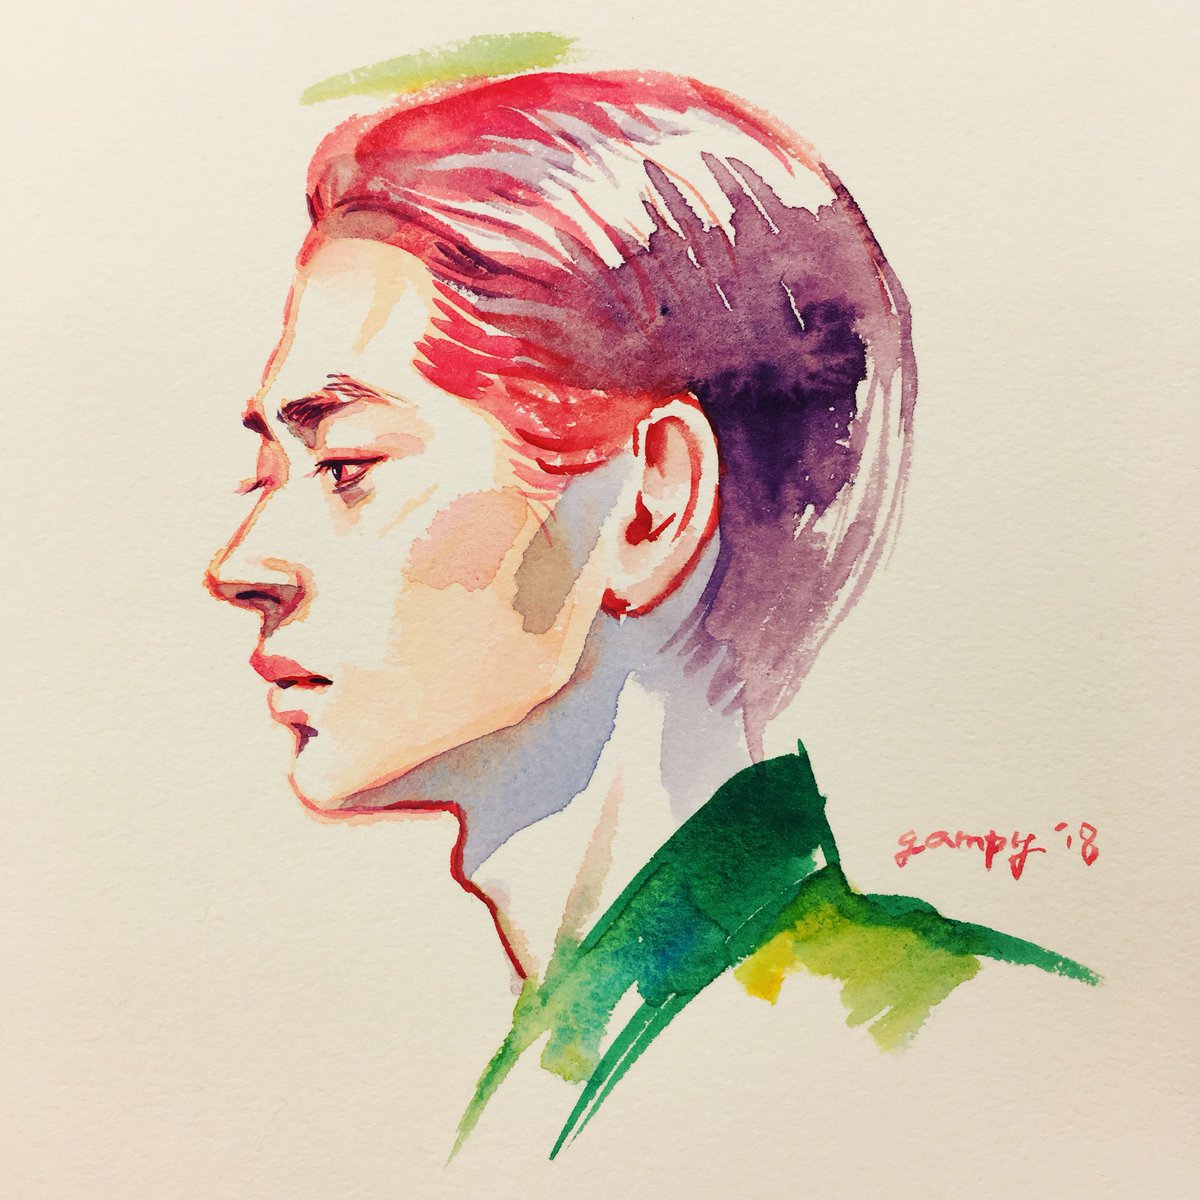 「そしてやっぱり完璧な横顔でしたな菅田将暉さん #MIU404 」|ganpukuのイラスト